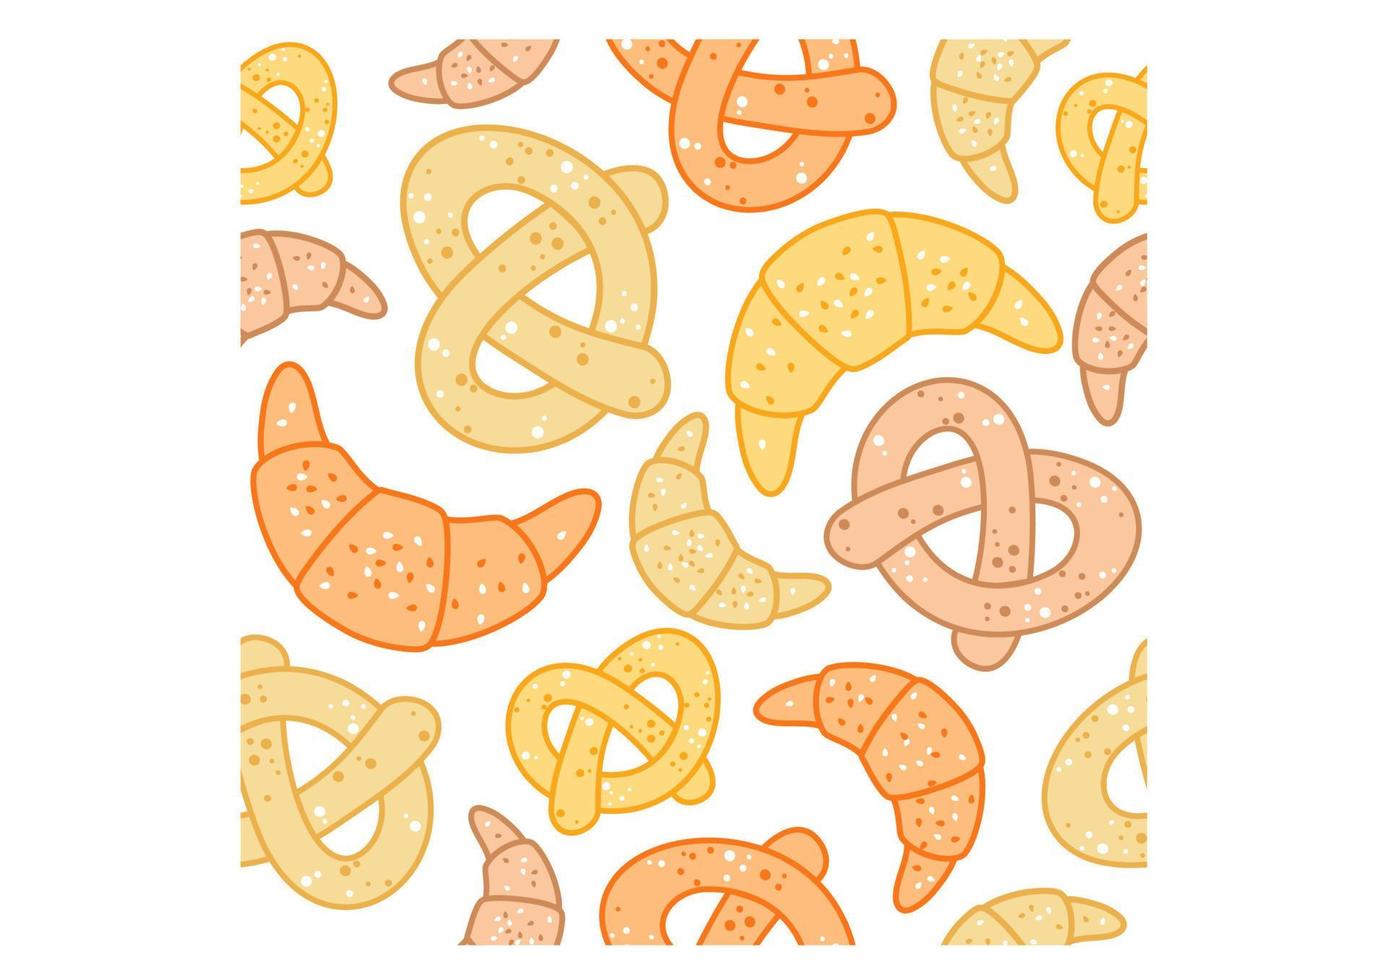 padrão perfeito de pretzels e croissants vetor